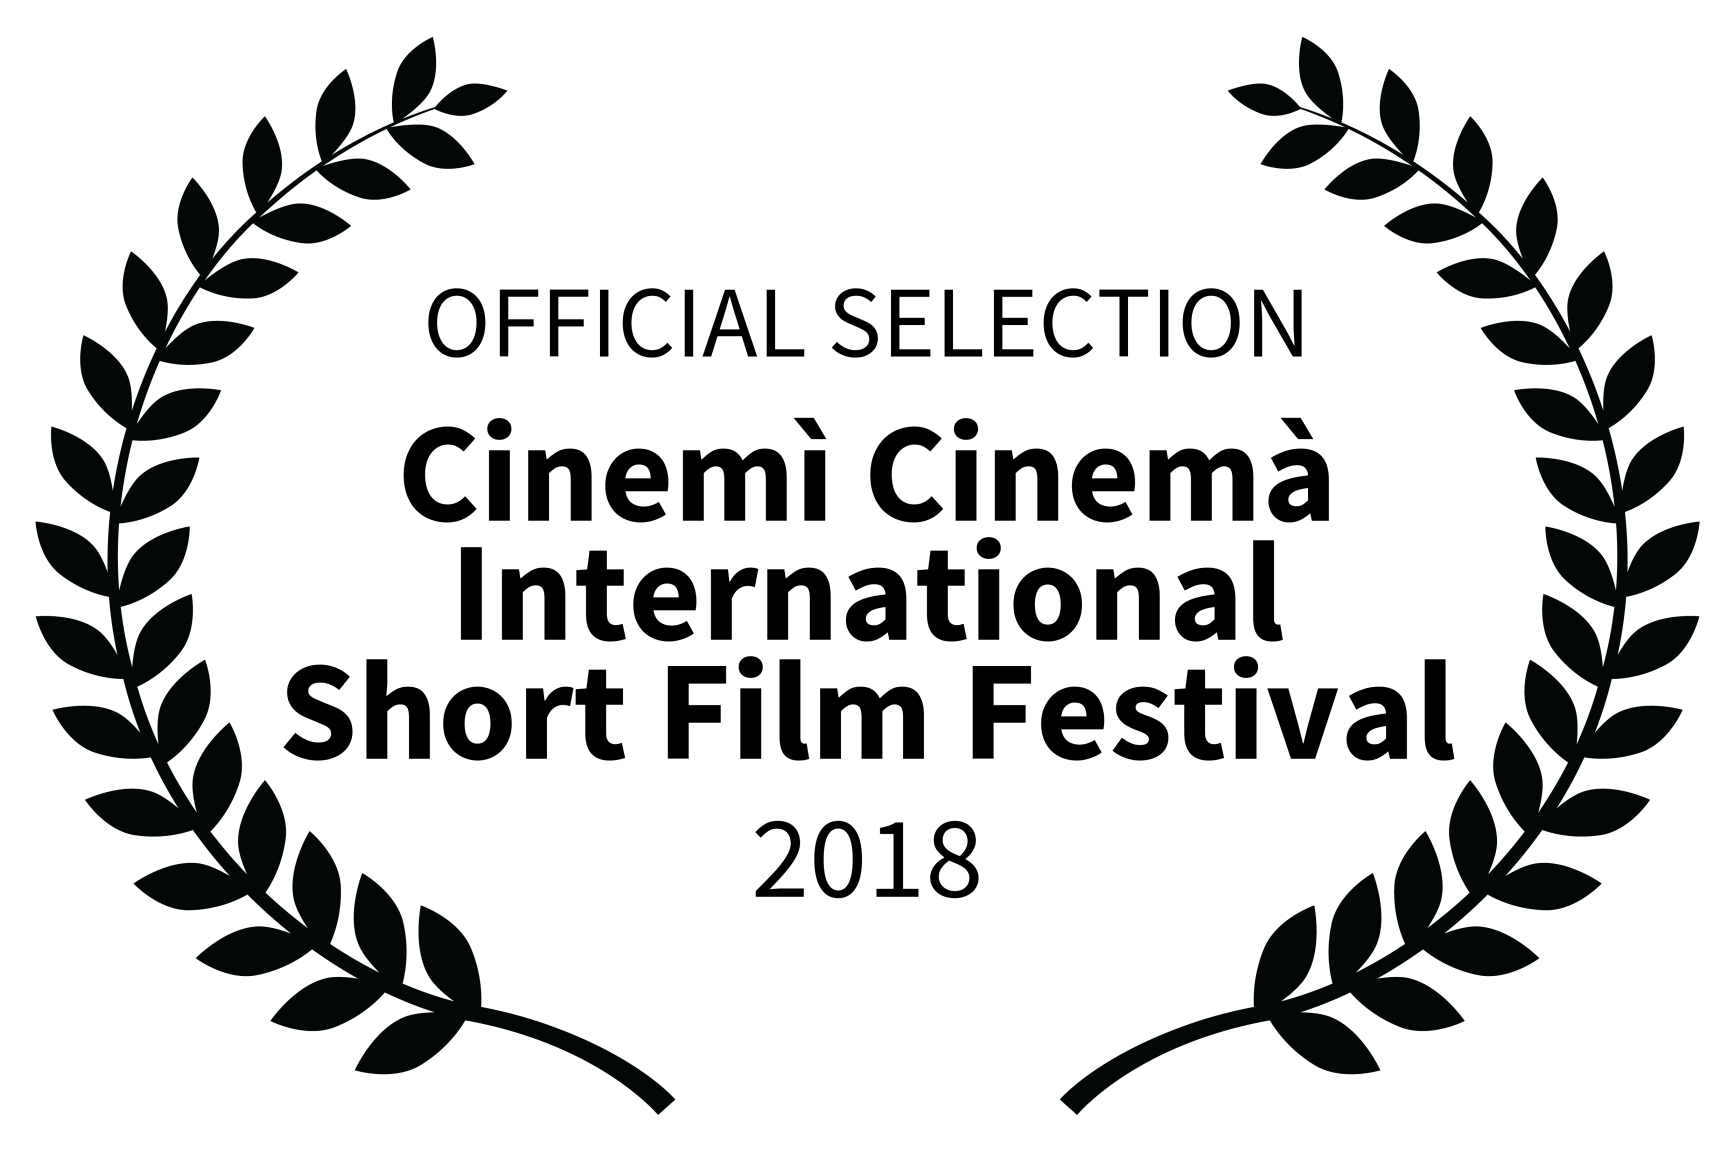 OFFICIAL SELECTION - Cinem Cinem International Short Film Festival - 2018